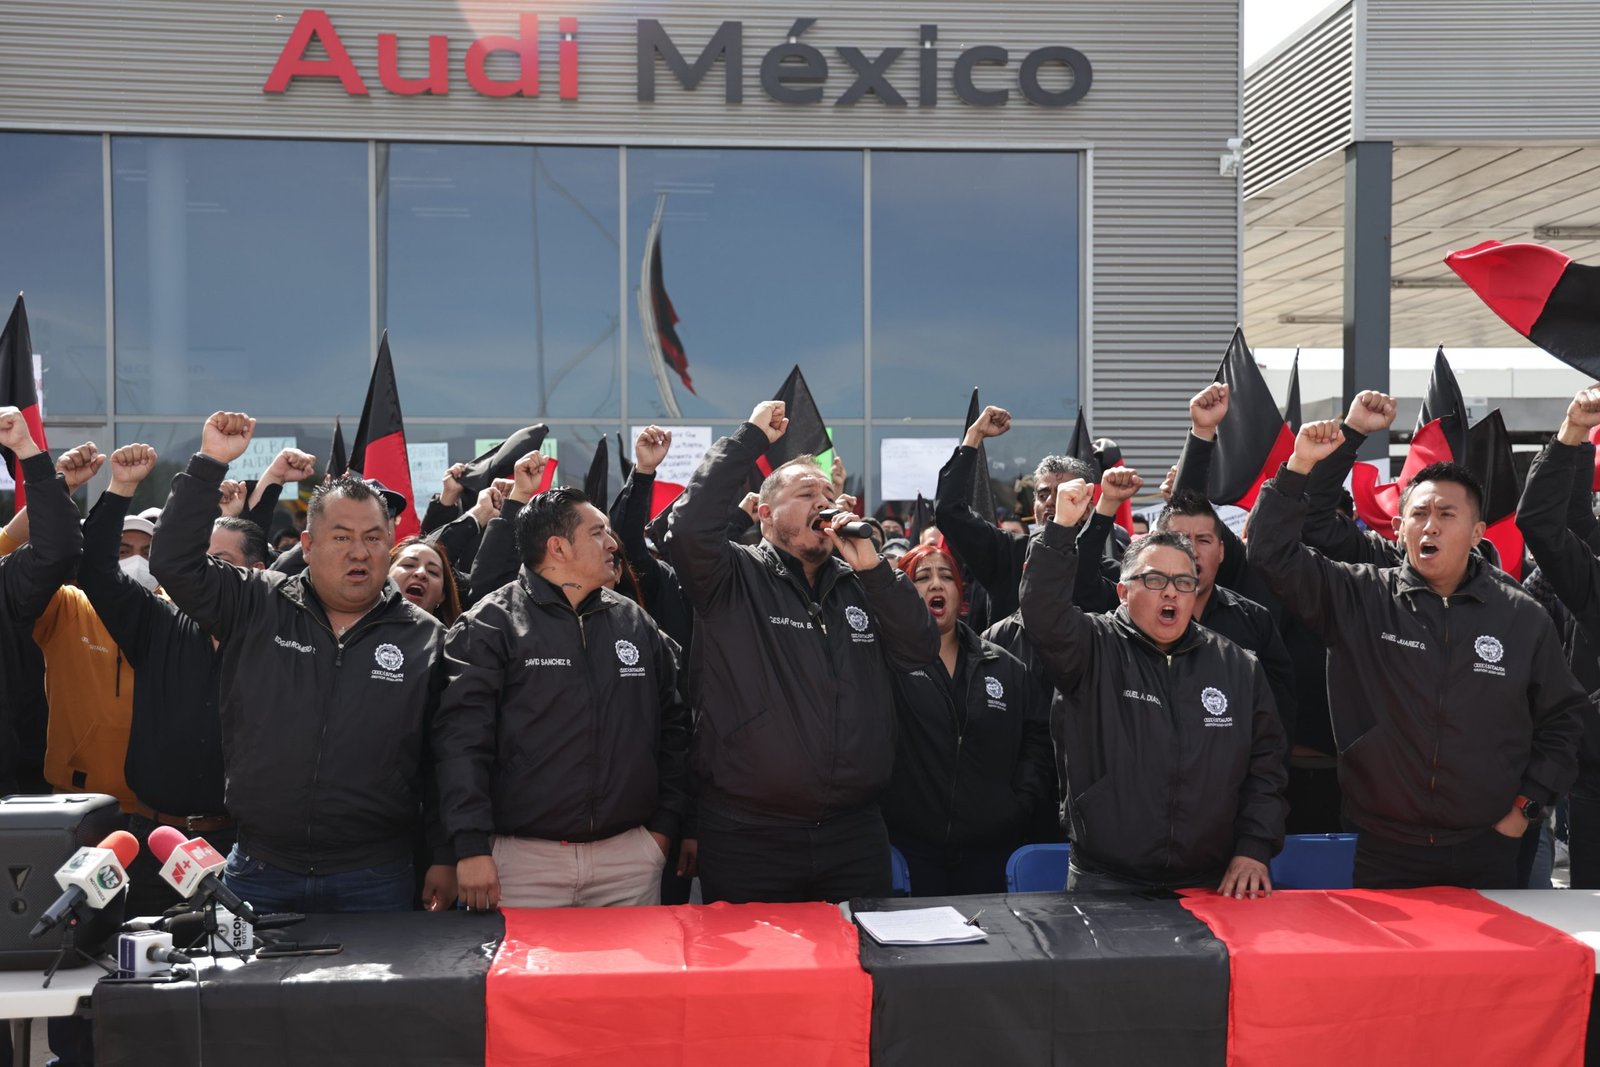 Trabajadores hicieron pronunciamientos sobre la huelga en Audi